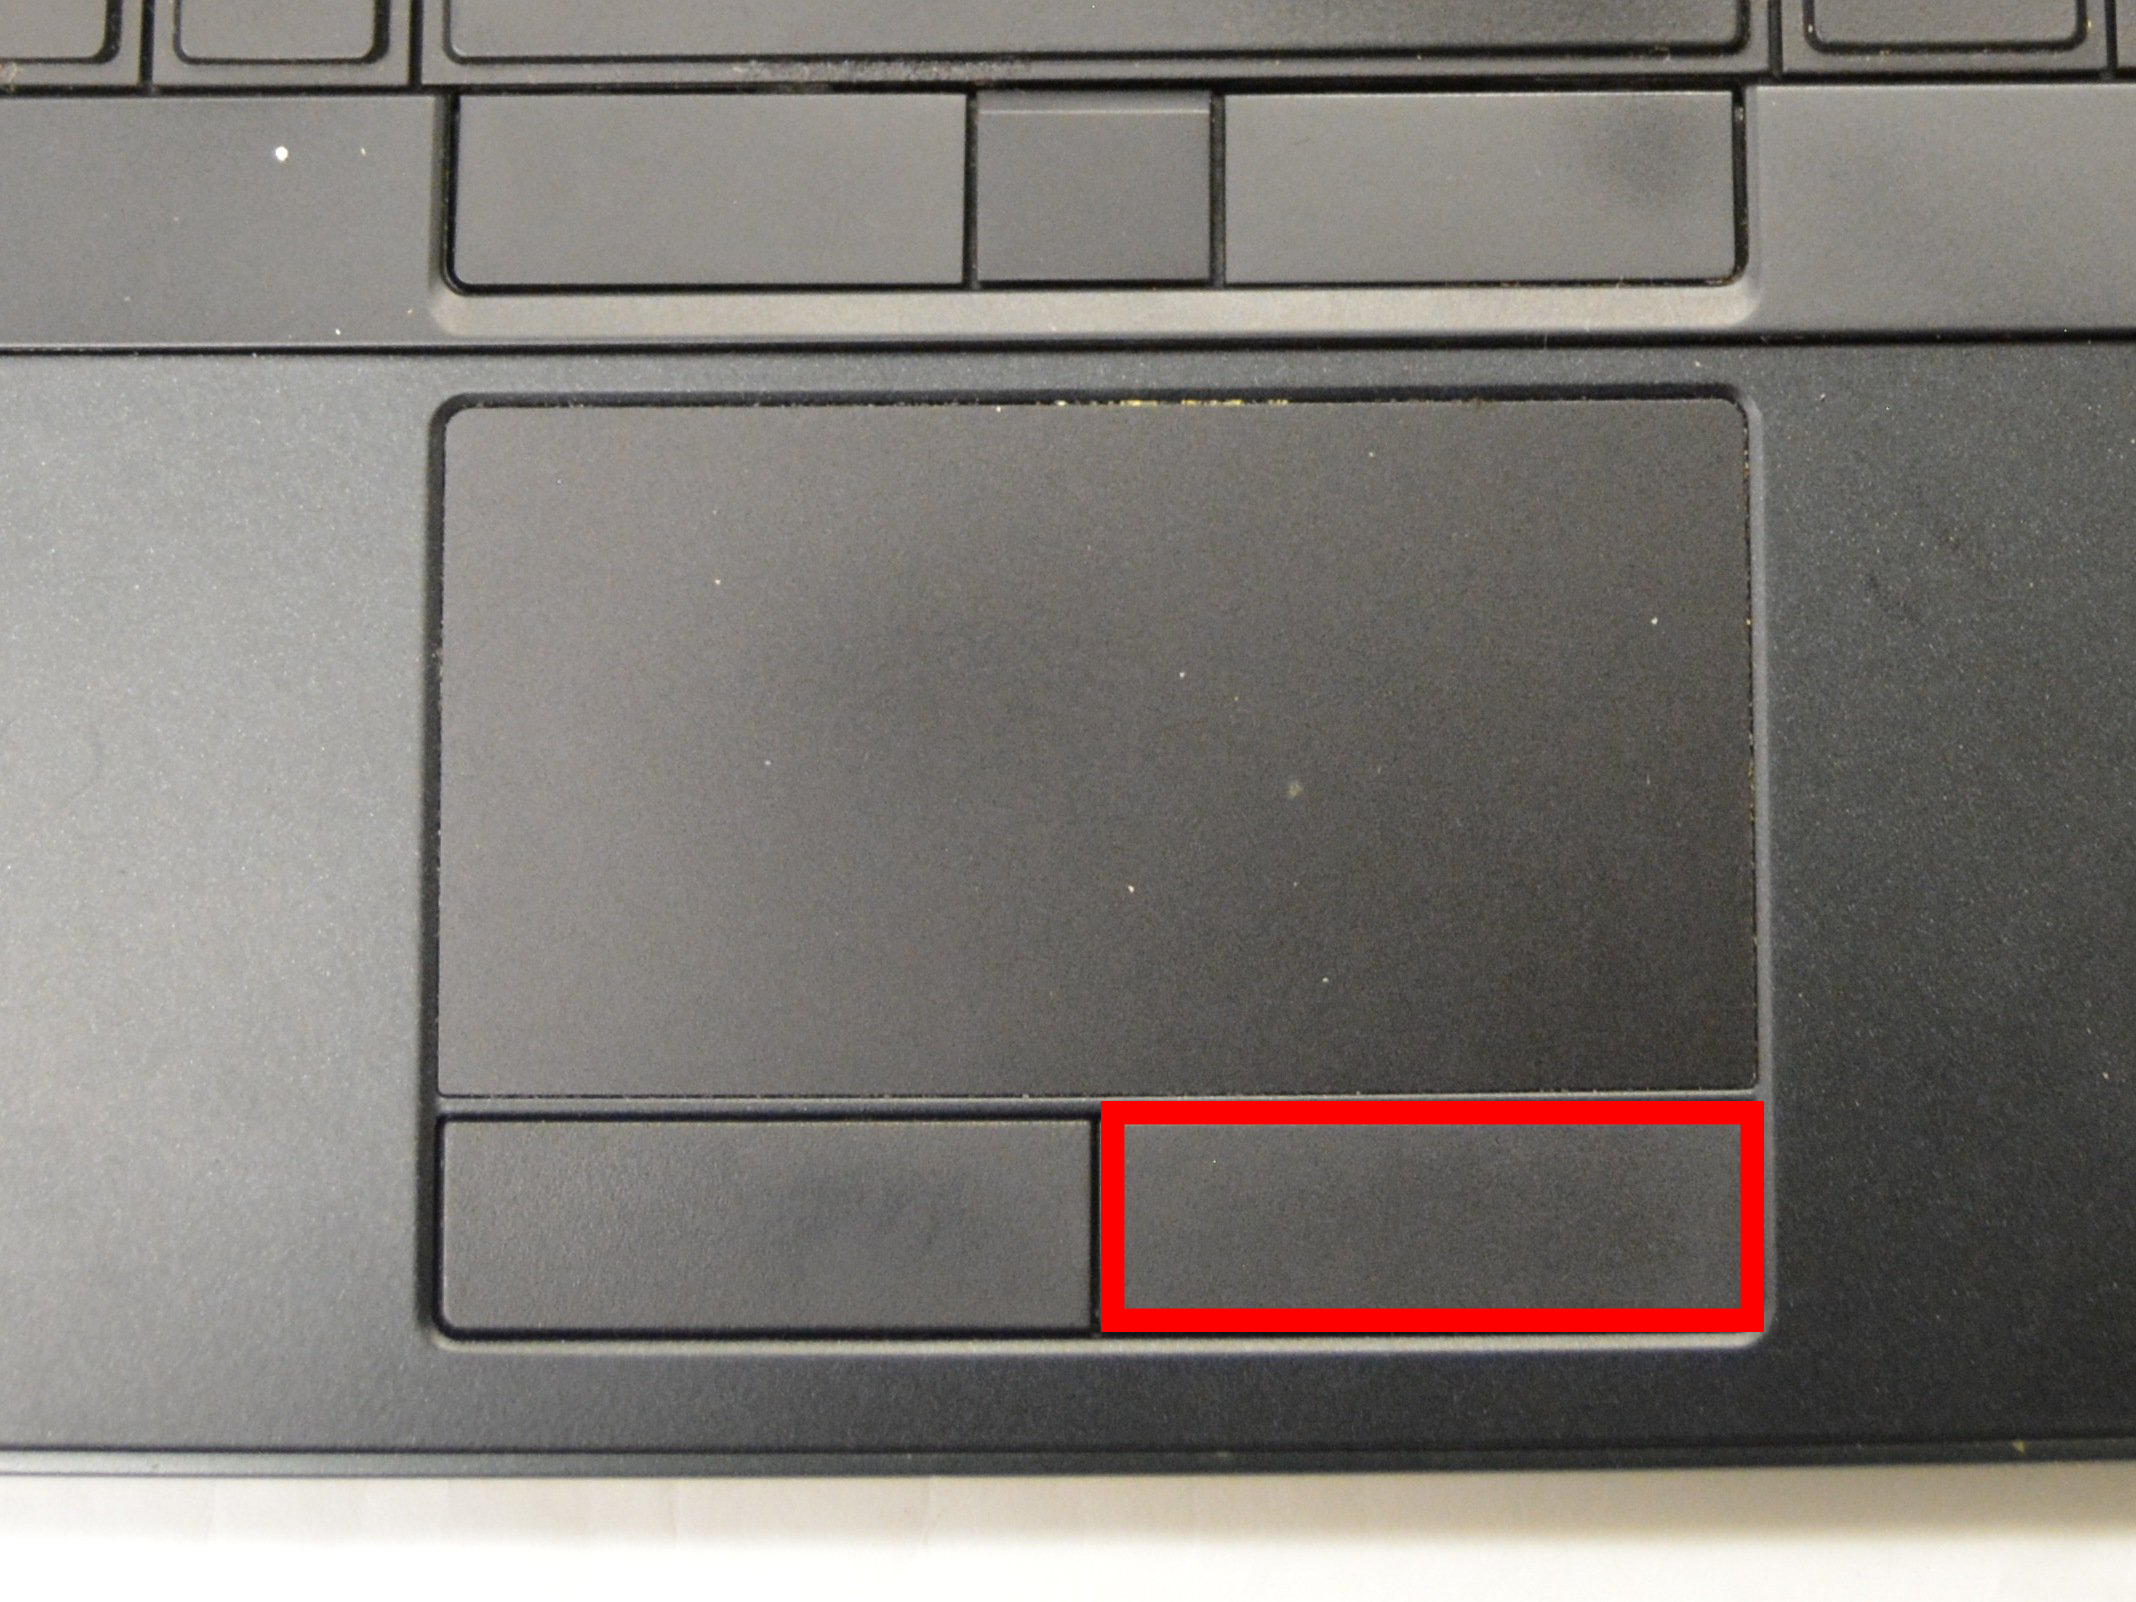 Dell Latitude E7440 lỗi touchpad không bấm được chuột phải